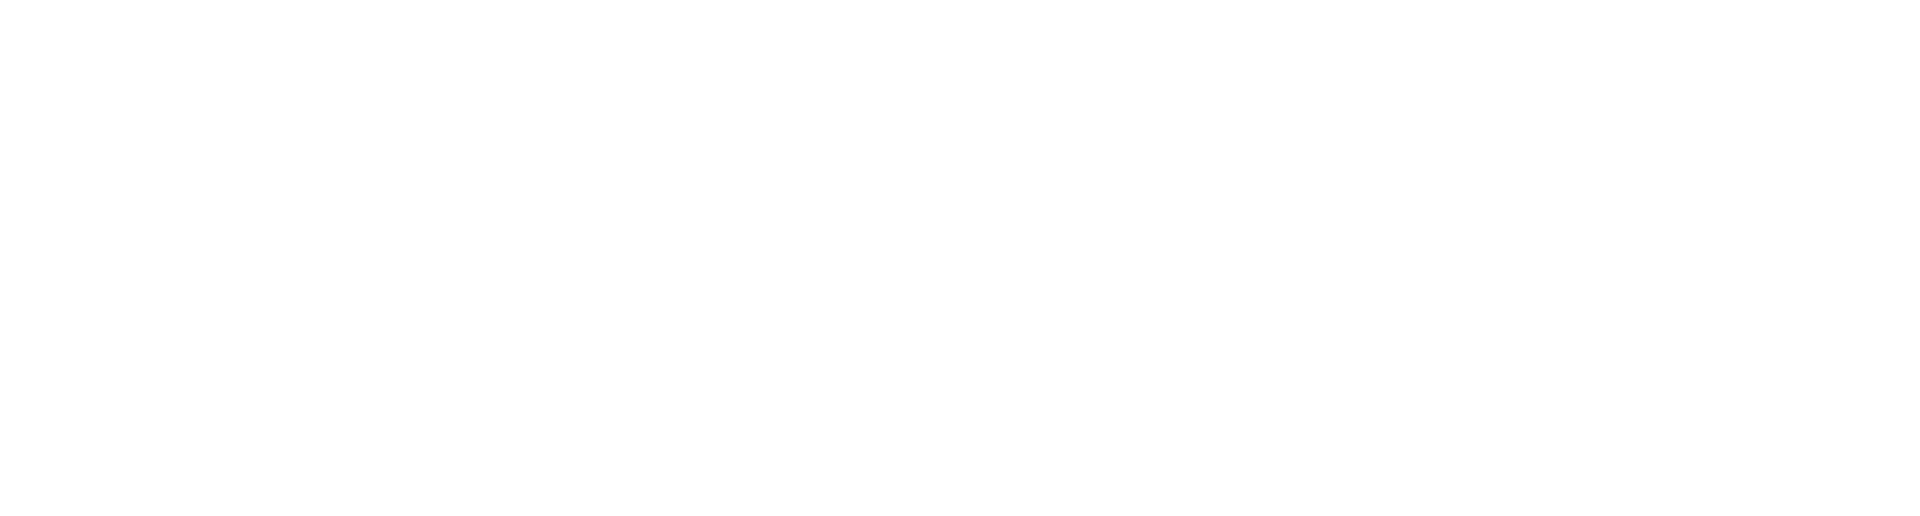 Angelique Kidjo Logo - White